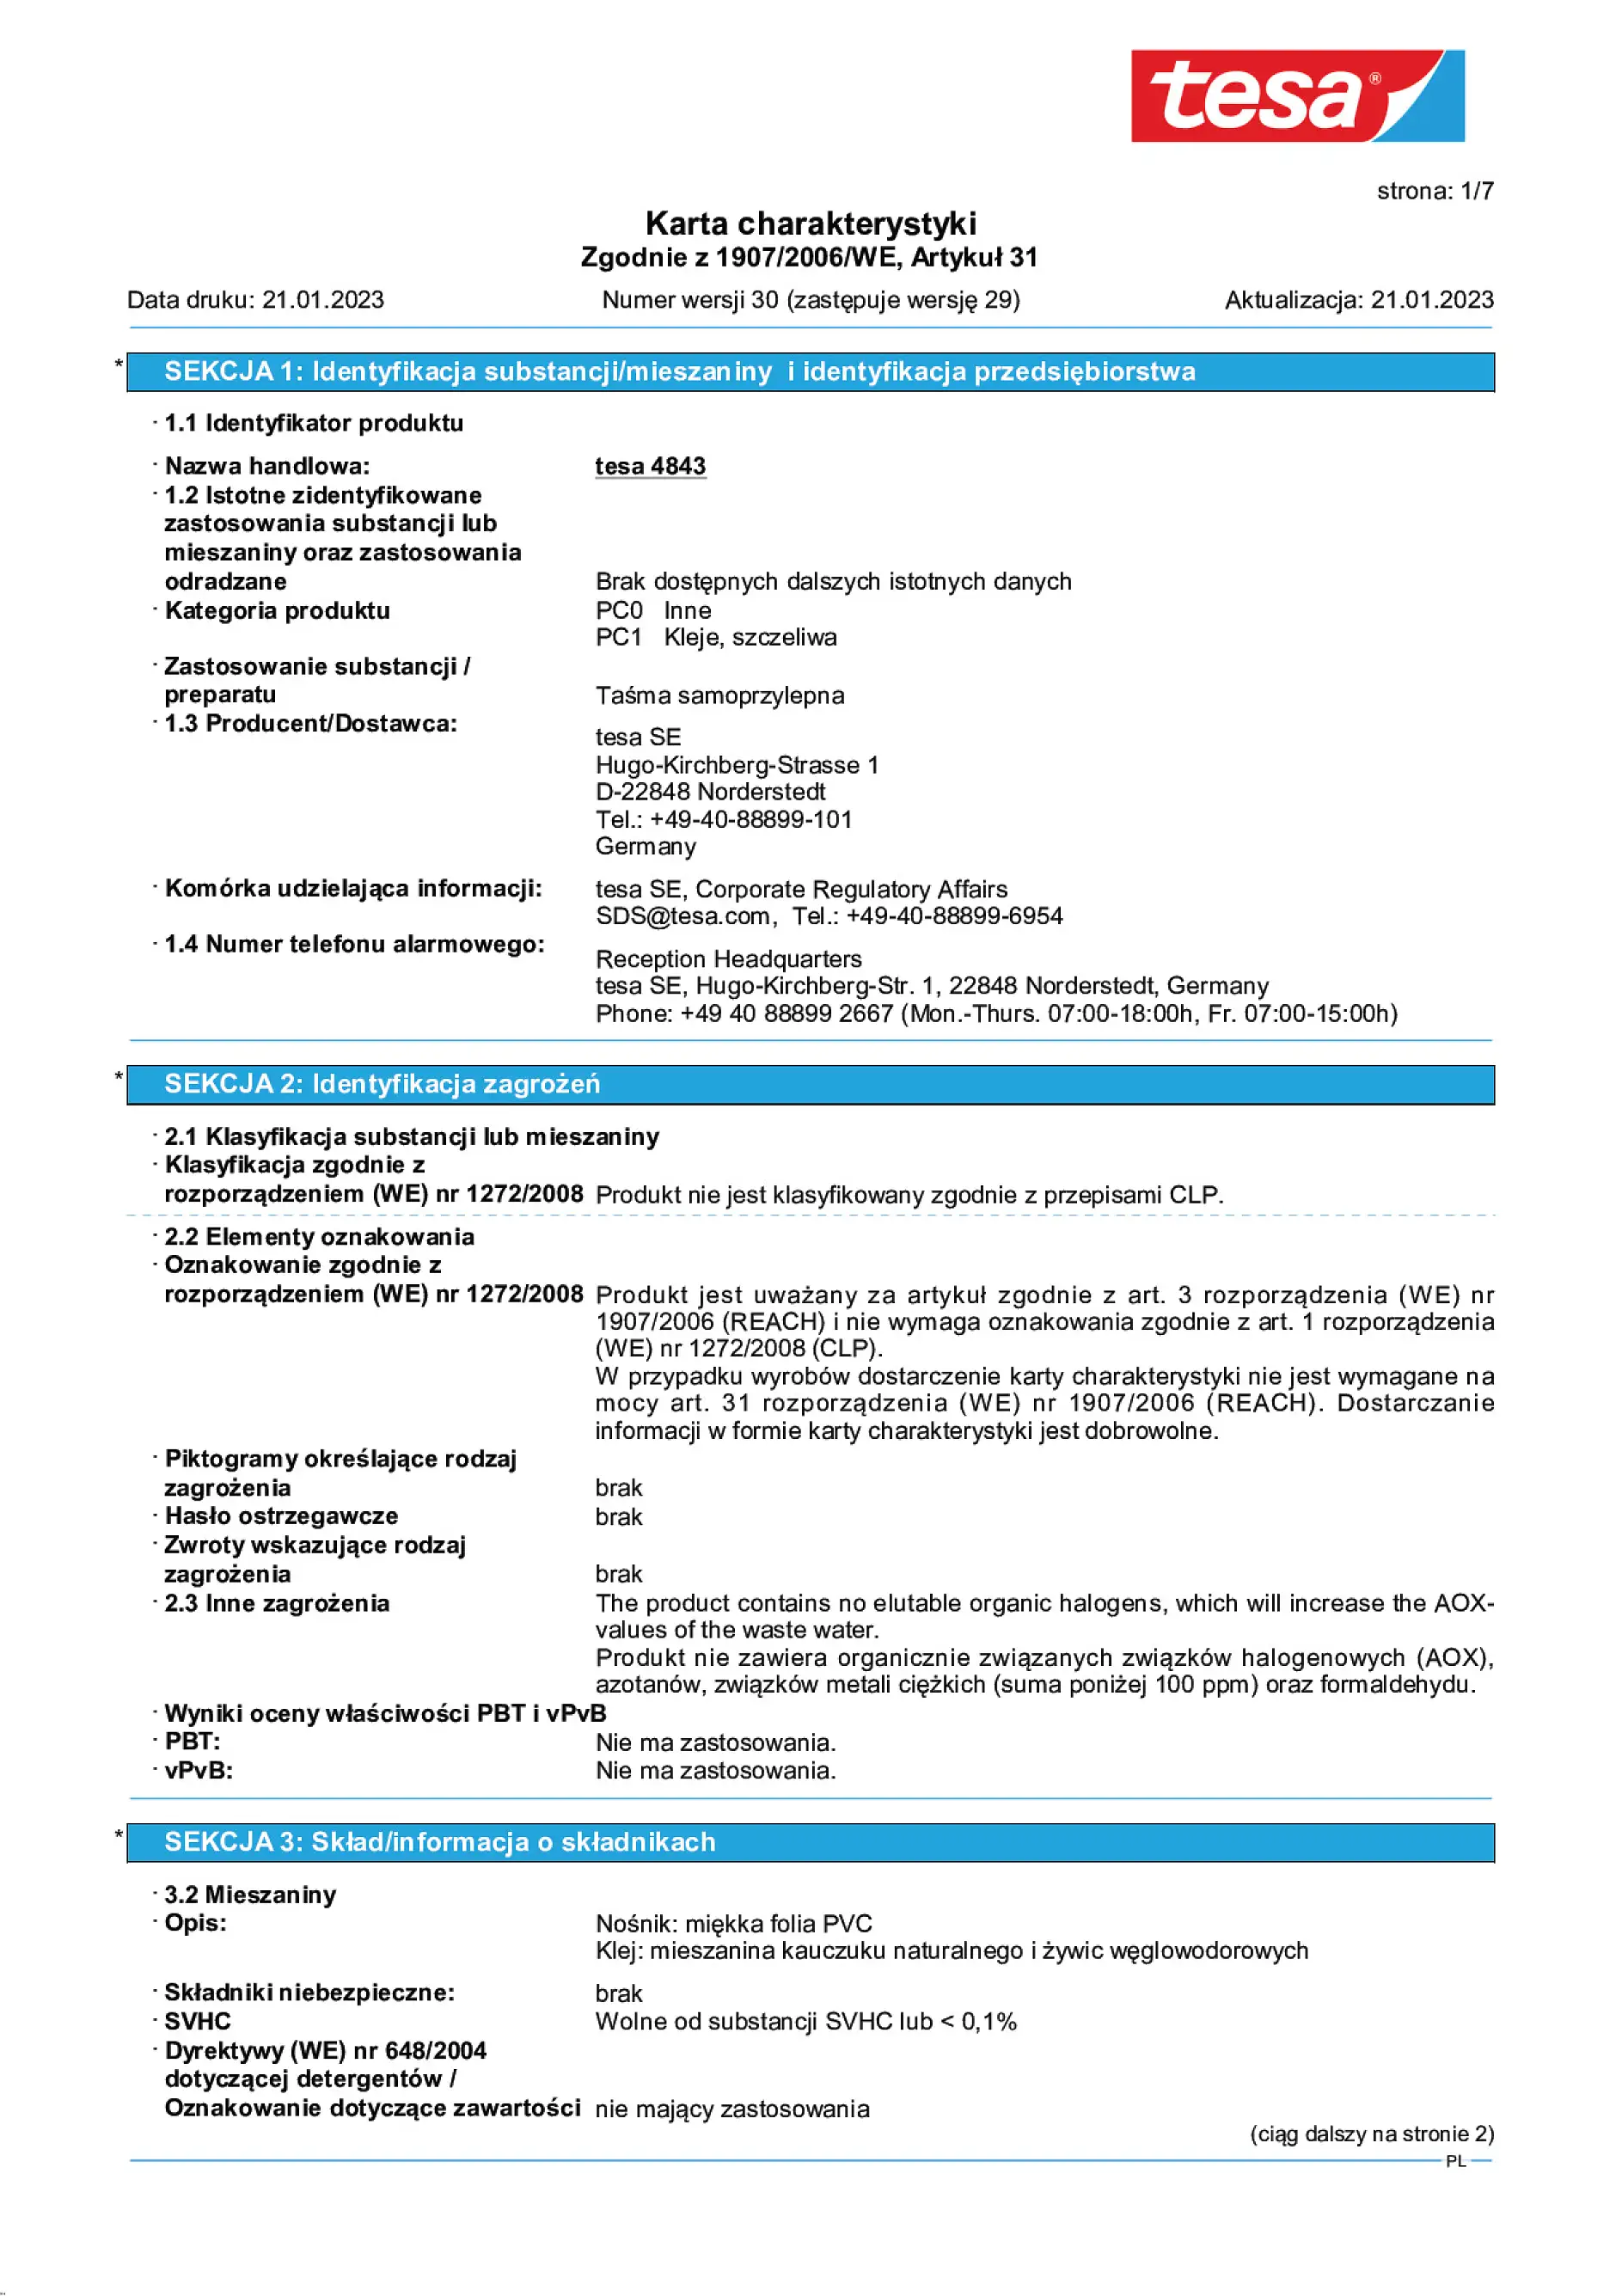 Safety data sheet_tesa® 4843_pl-PL_v30